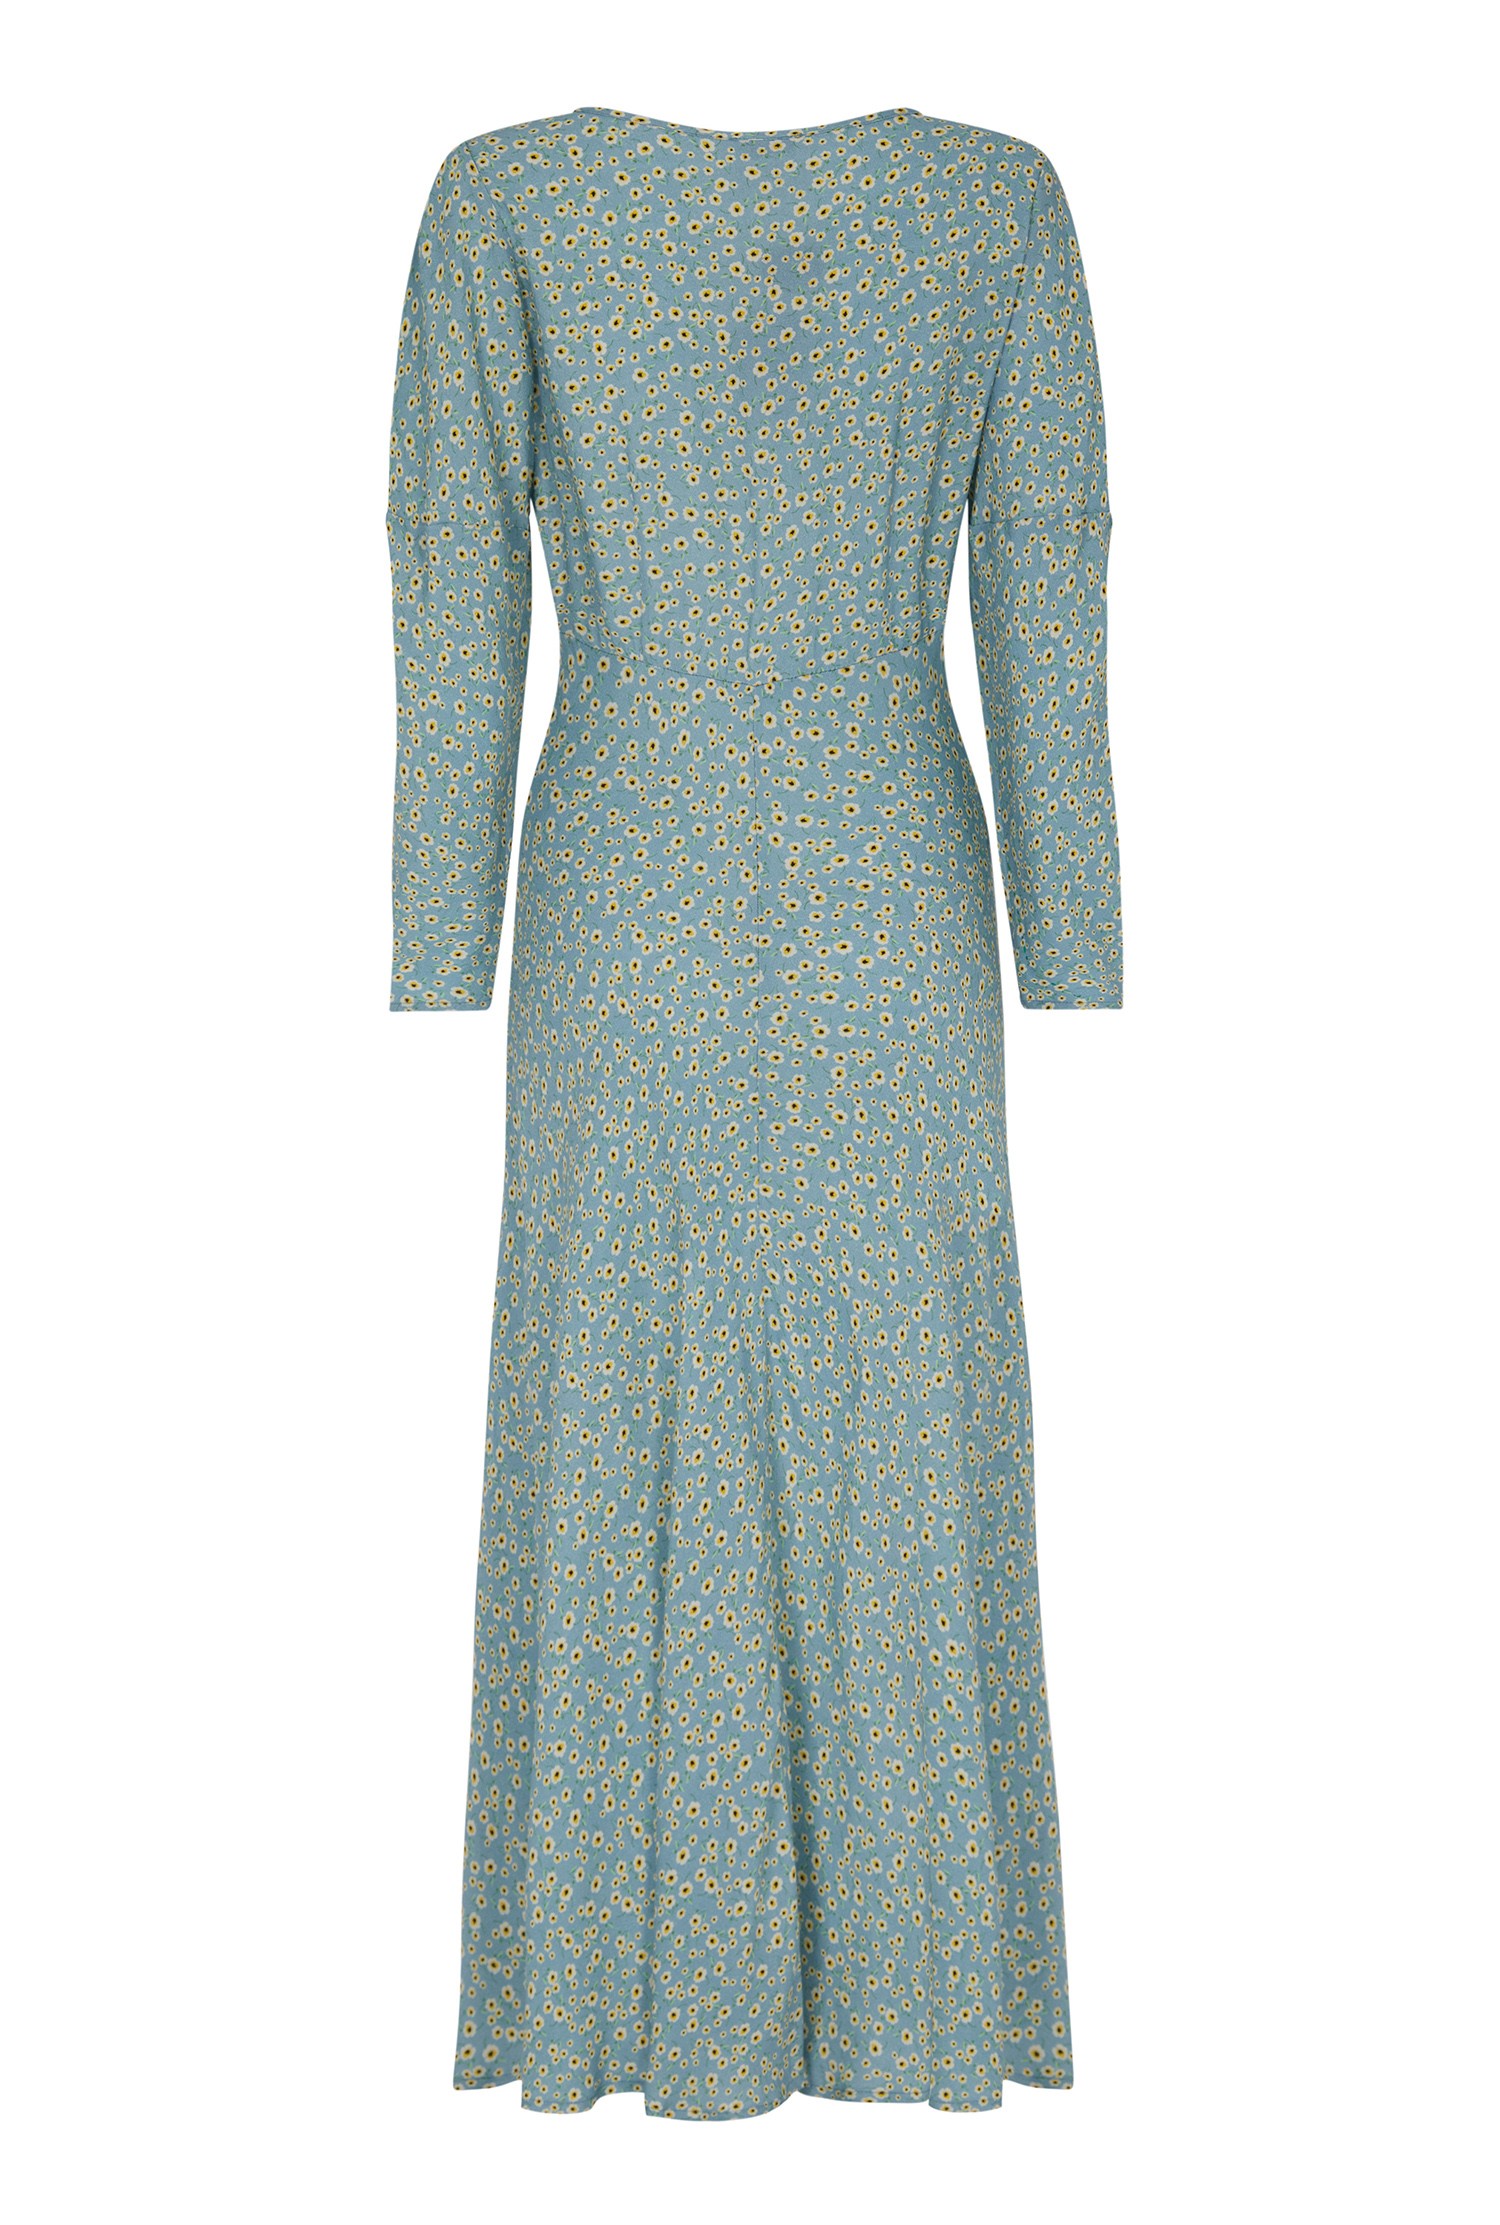 Clea Dress | Ghost.co.uk